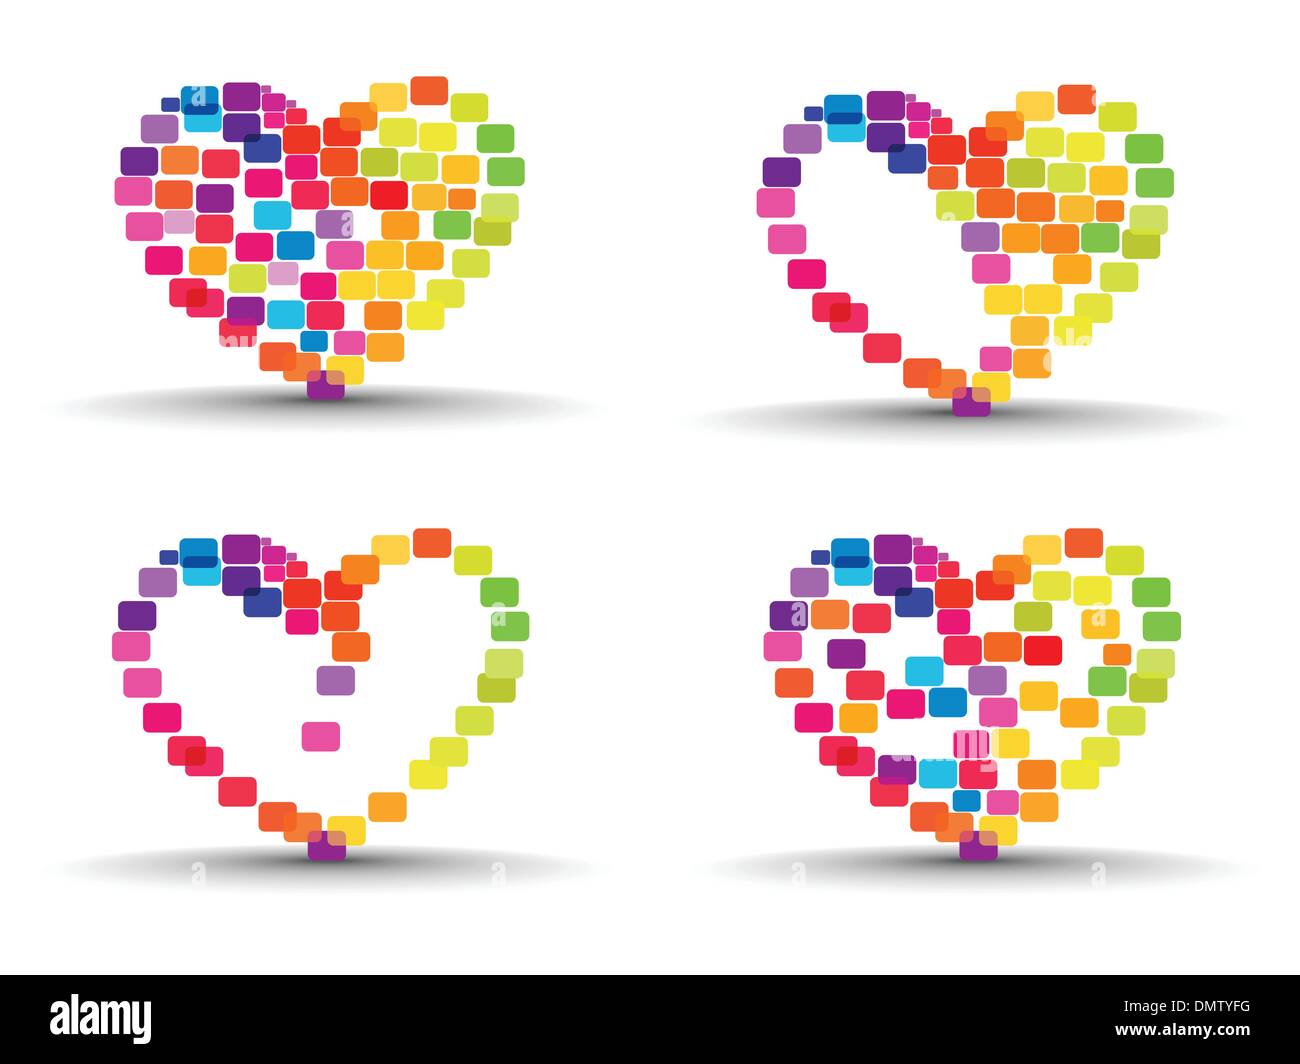 Un set di astratta colorate forme di cuore su sfondo isolato. Illustrazione Vettoriale